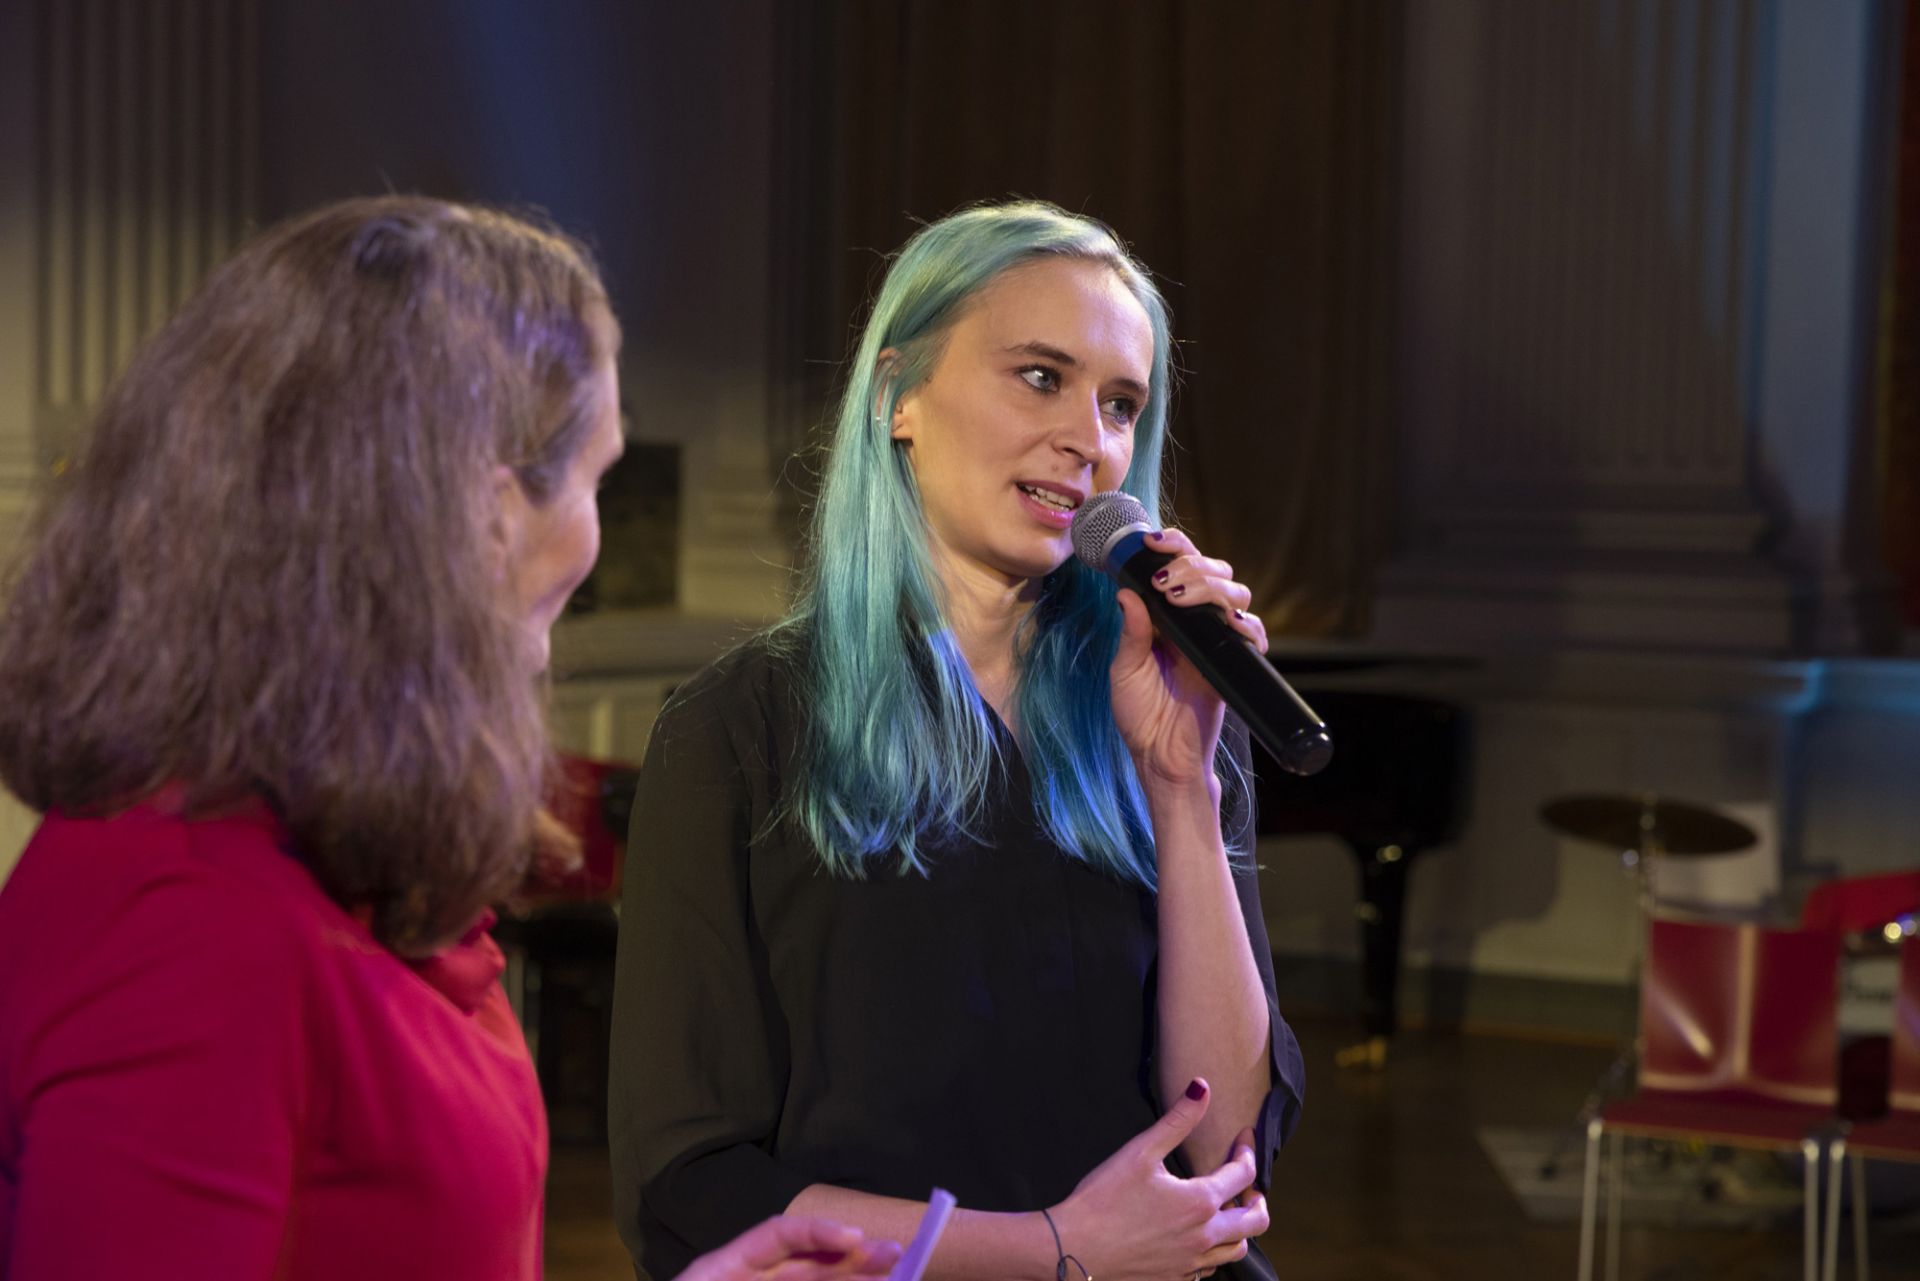 Emma Raunio sinisine hiuksineen kertoo esityksestä mikrofoni vasemmassa kädessään. Hänen oikealla puolellaan seisoo DuvTeaternin ohjaaja Mikaela Hasán.